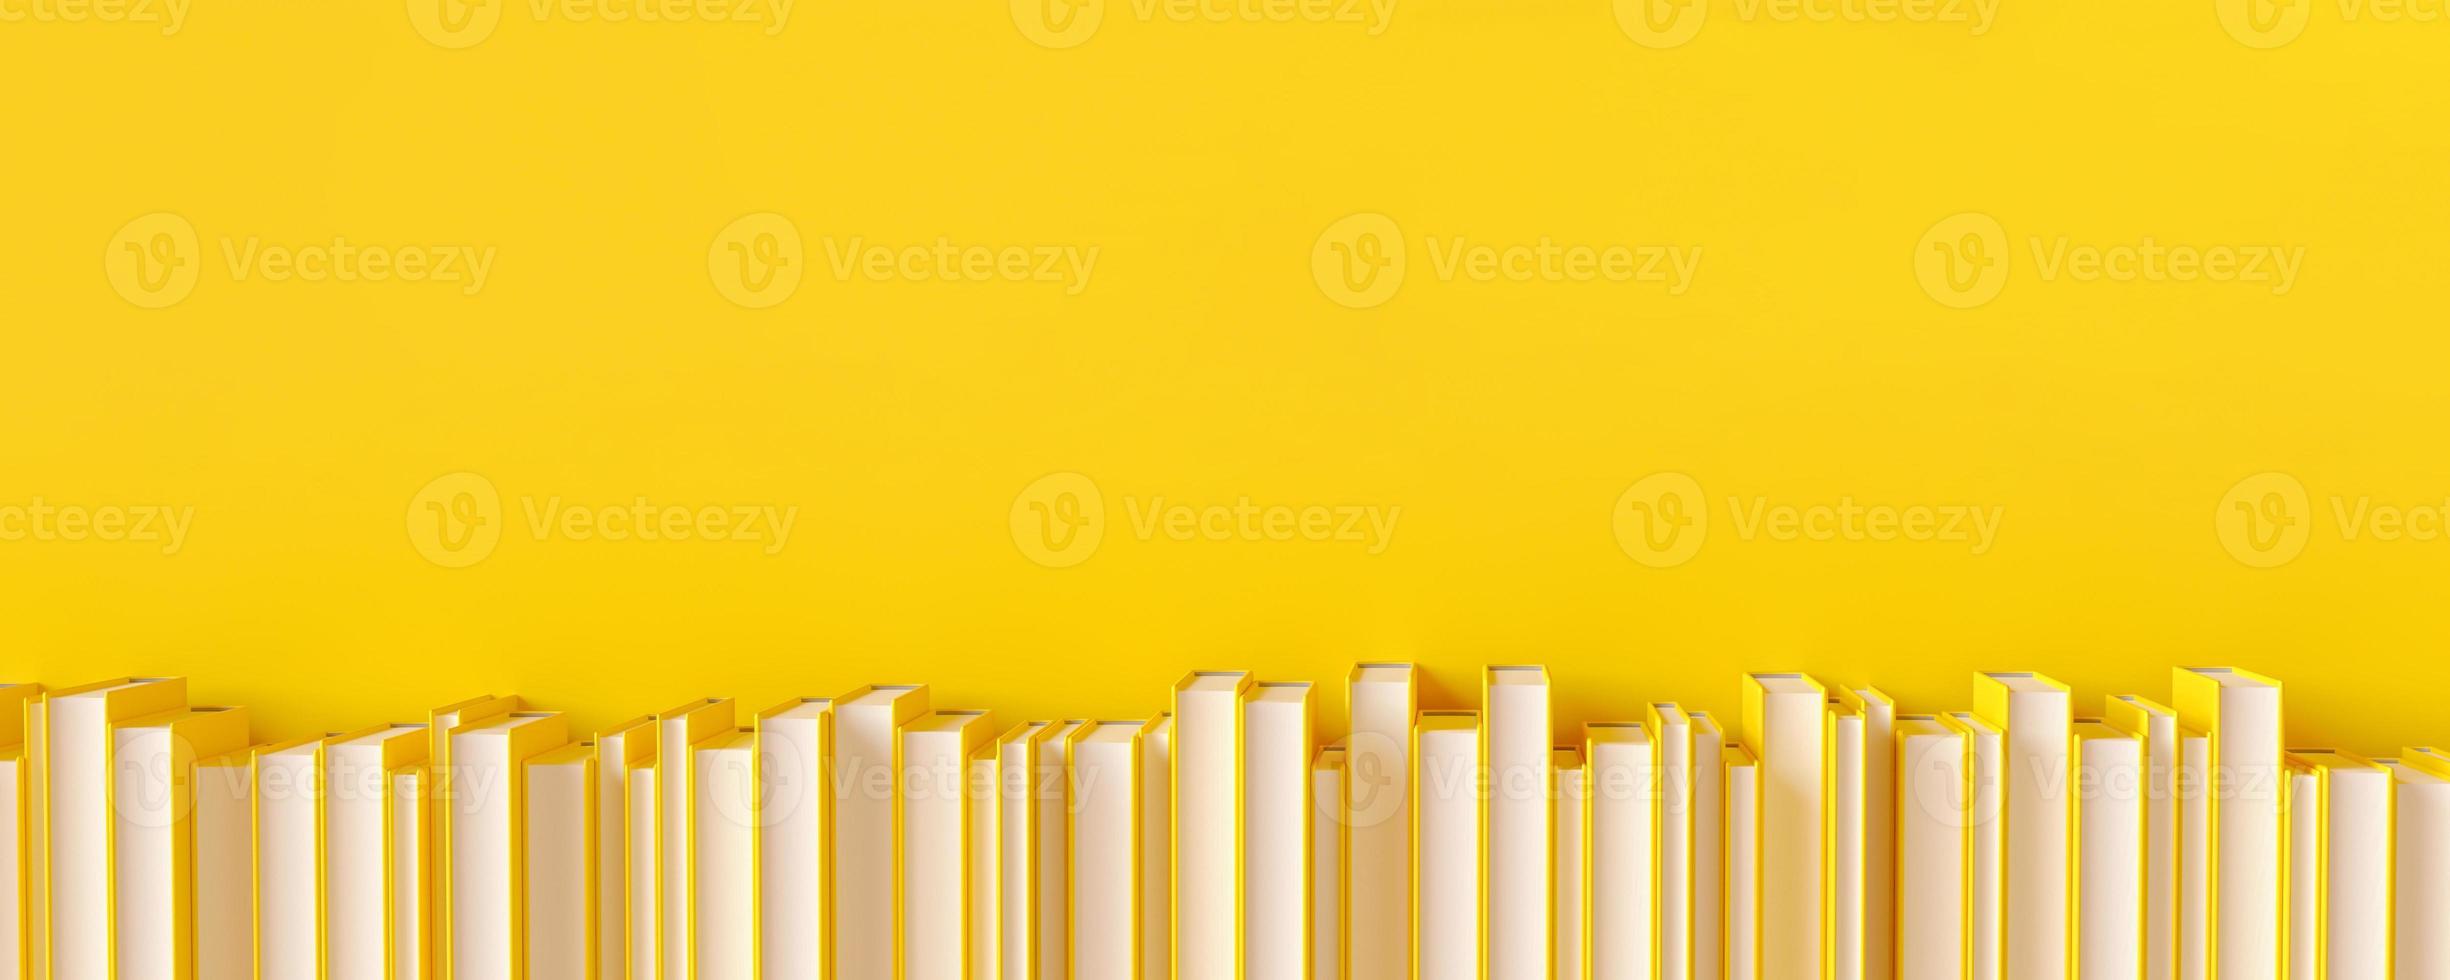 una fila de libros amarillos sobre un fondo amarillo. ilustración de representación 3d. foto